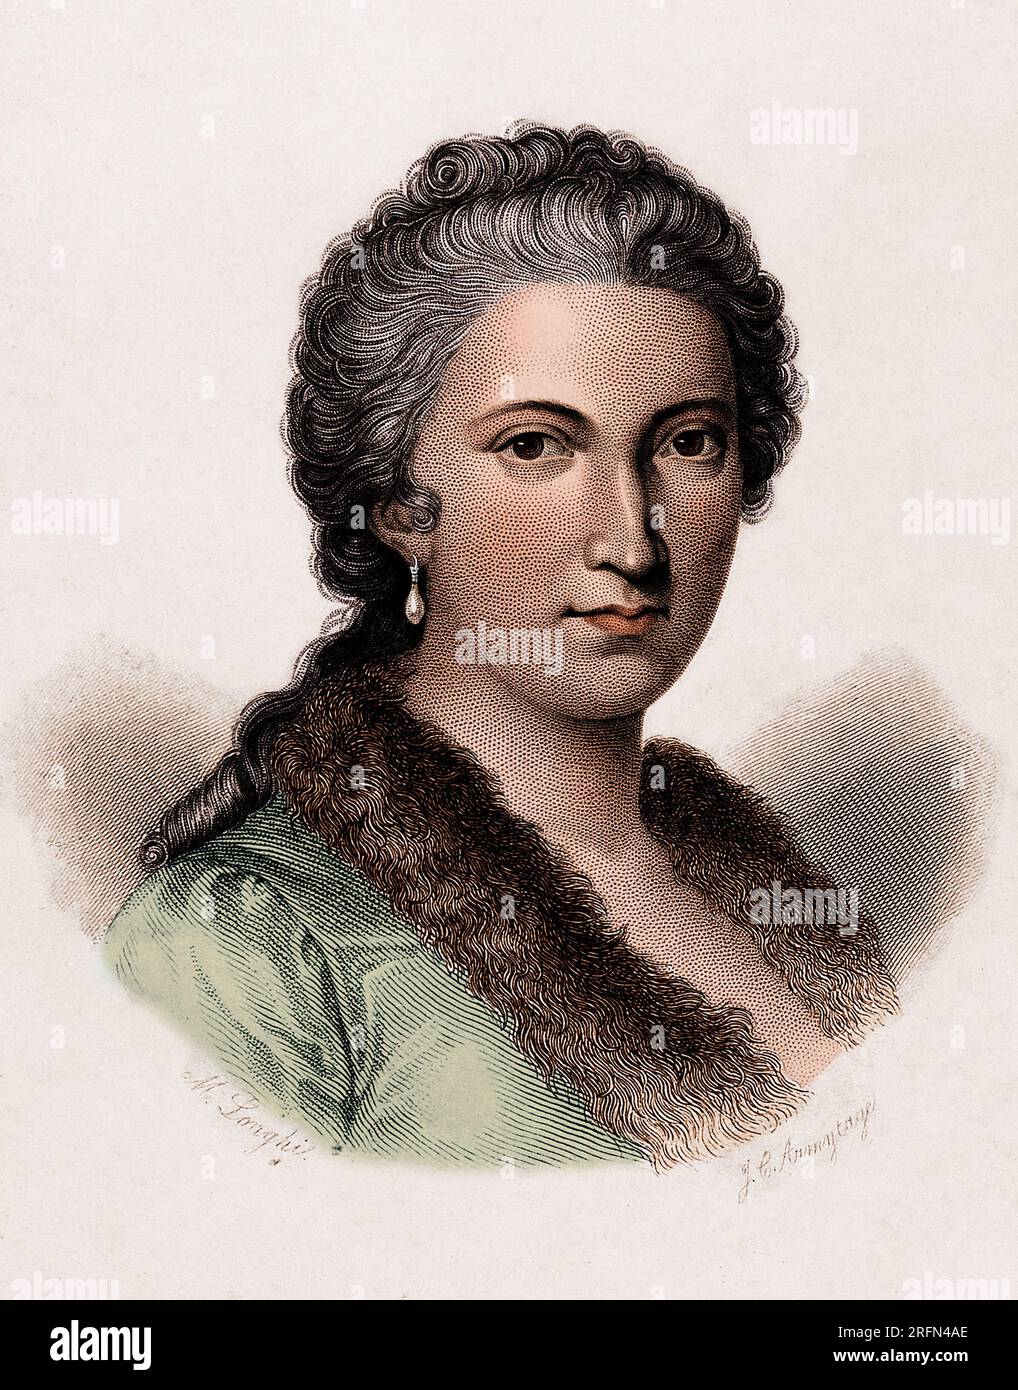 Portrait de Maria Gaetana Agnesi (1718-1799), mathématicienne et philosophe italienne, qui fut la première femme à écrire un manuel de mathématiques et la première femme professeur de mathématiques dans une université. Elle